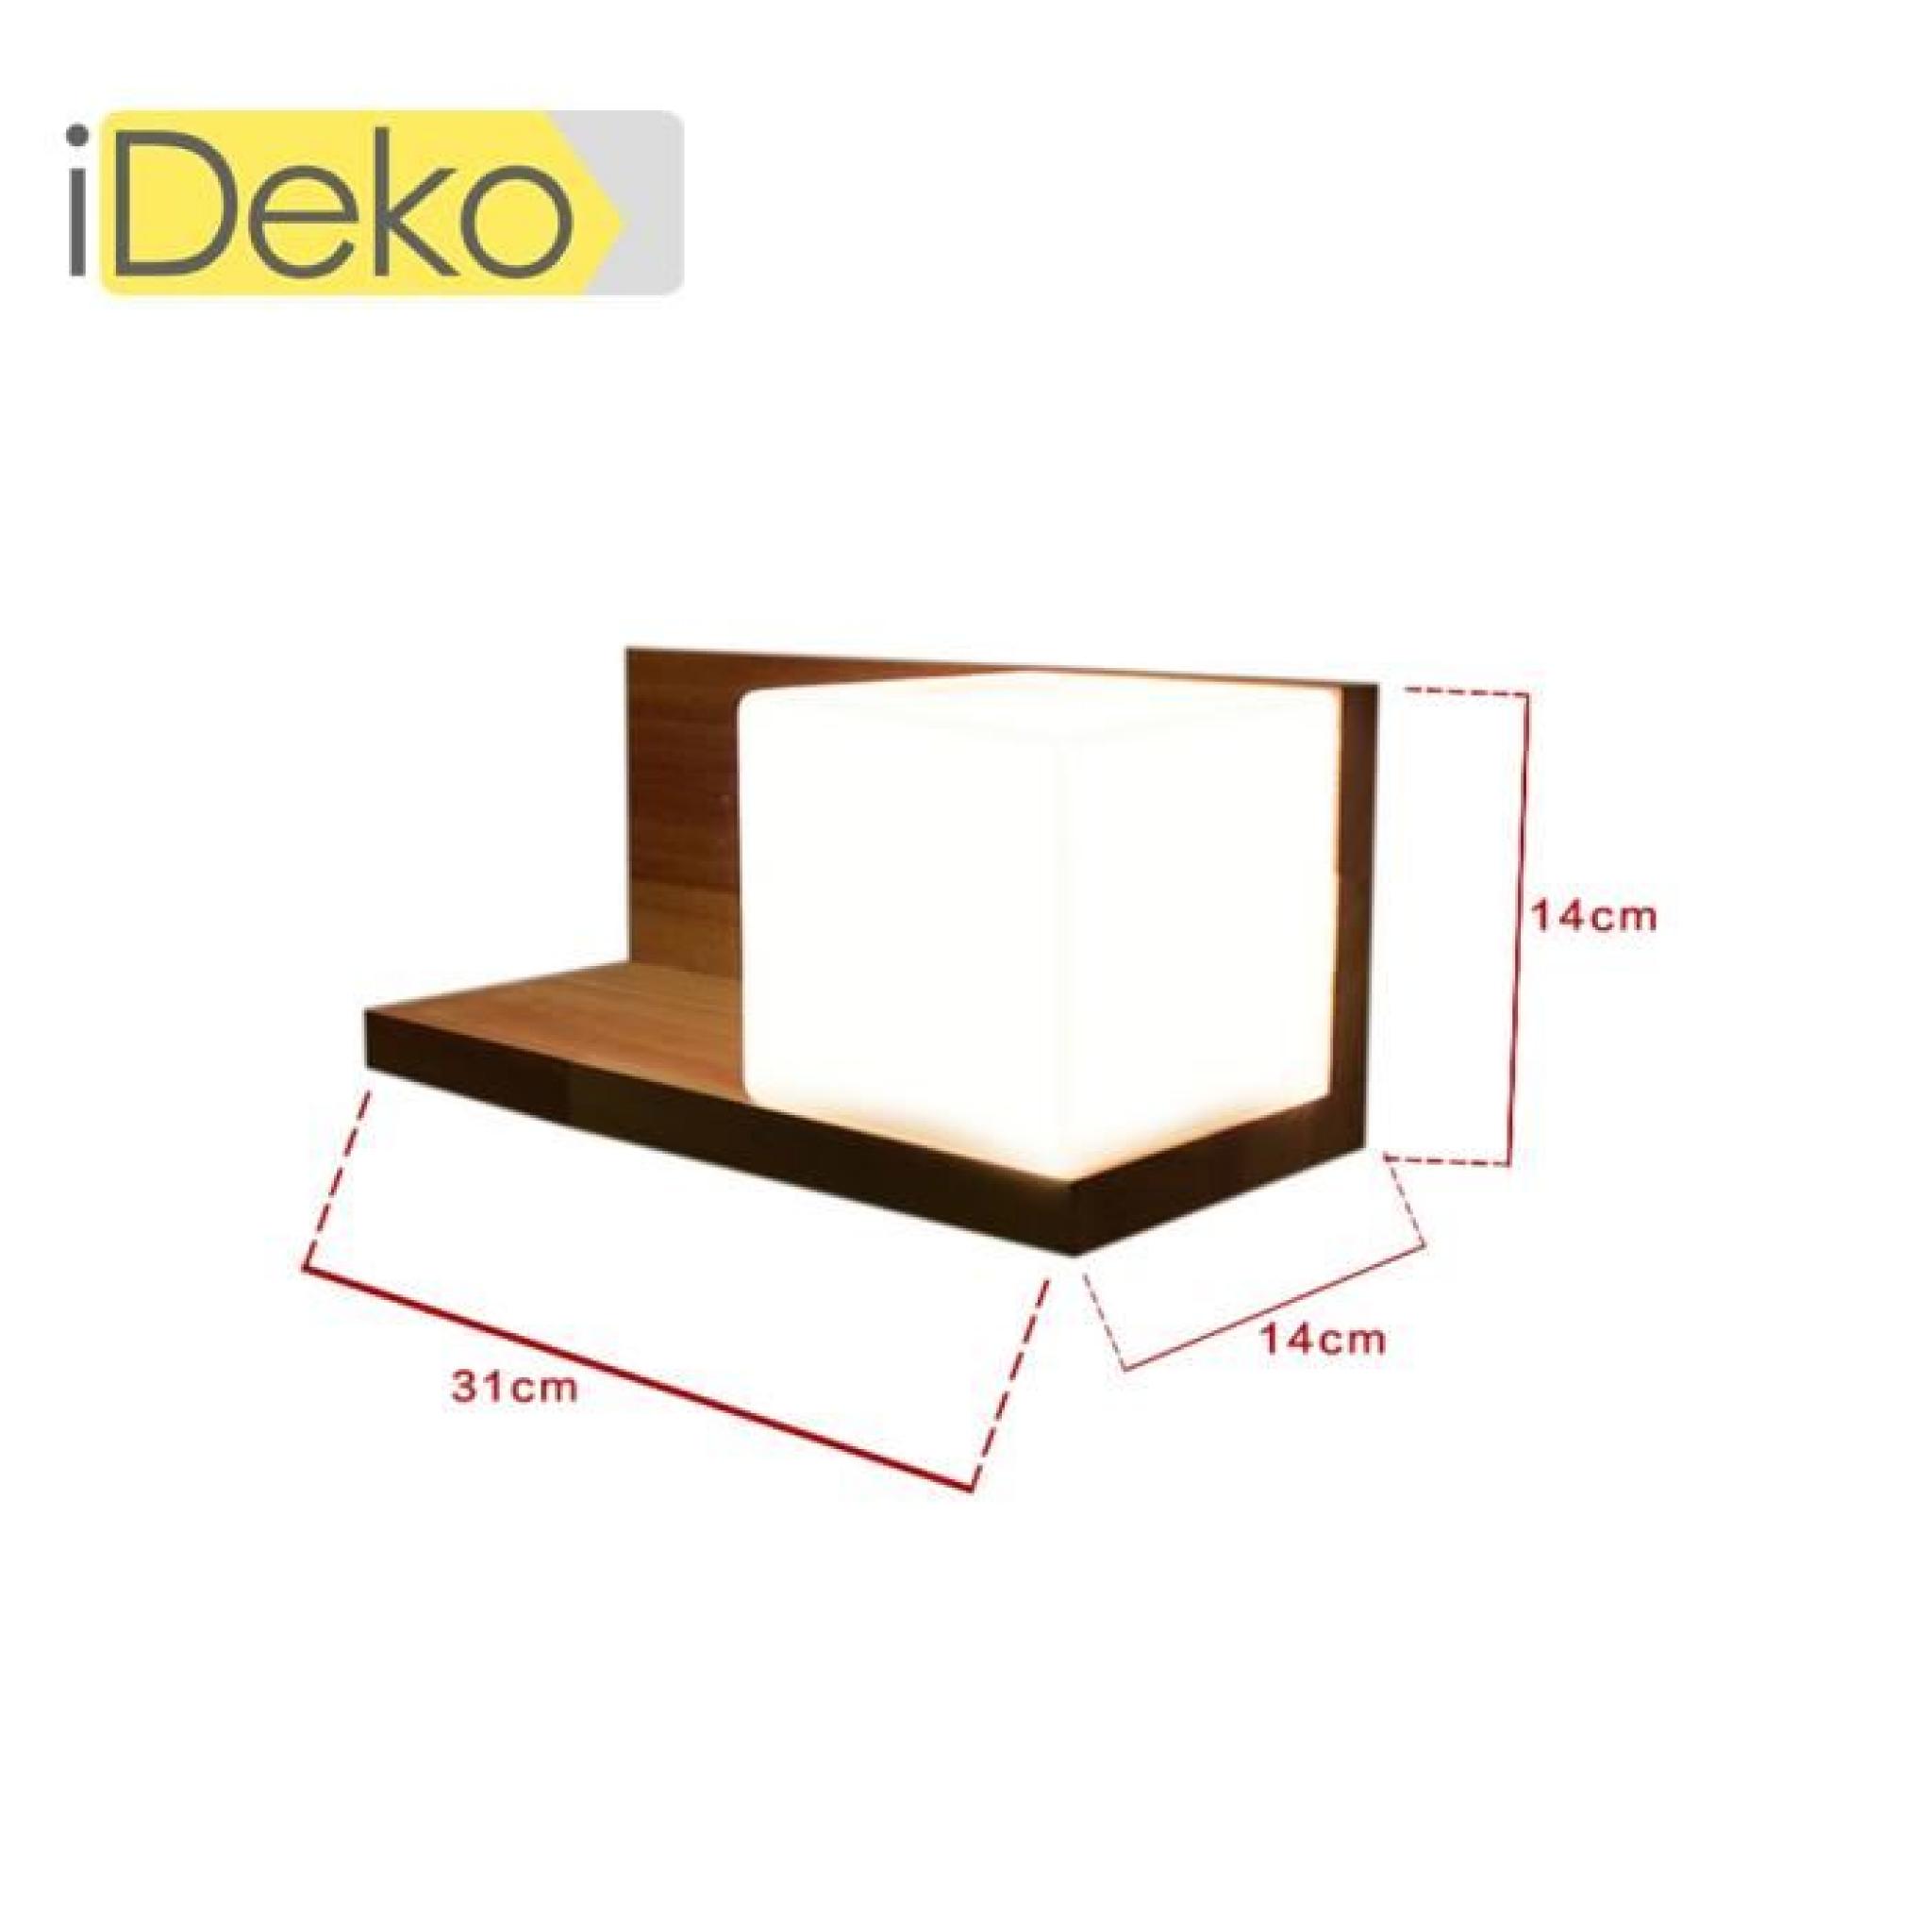 iDeko® Lampe à poser bureau table chevet Art design unique en verre mural  pas cher